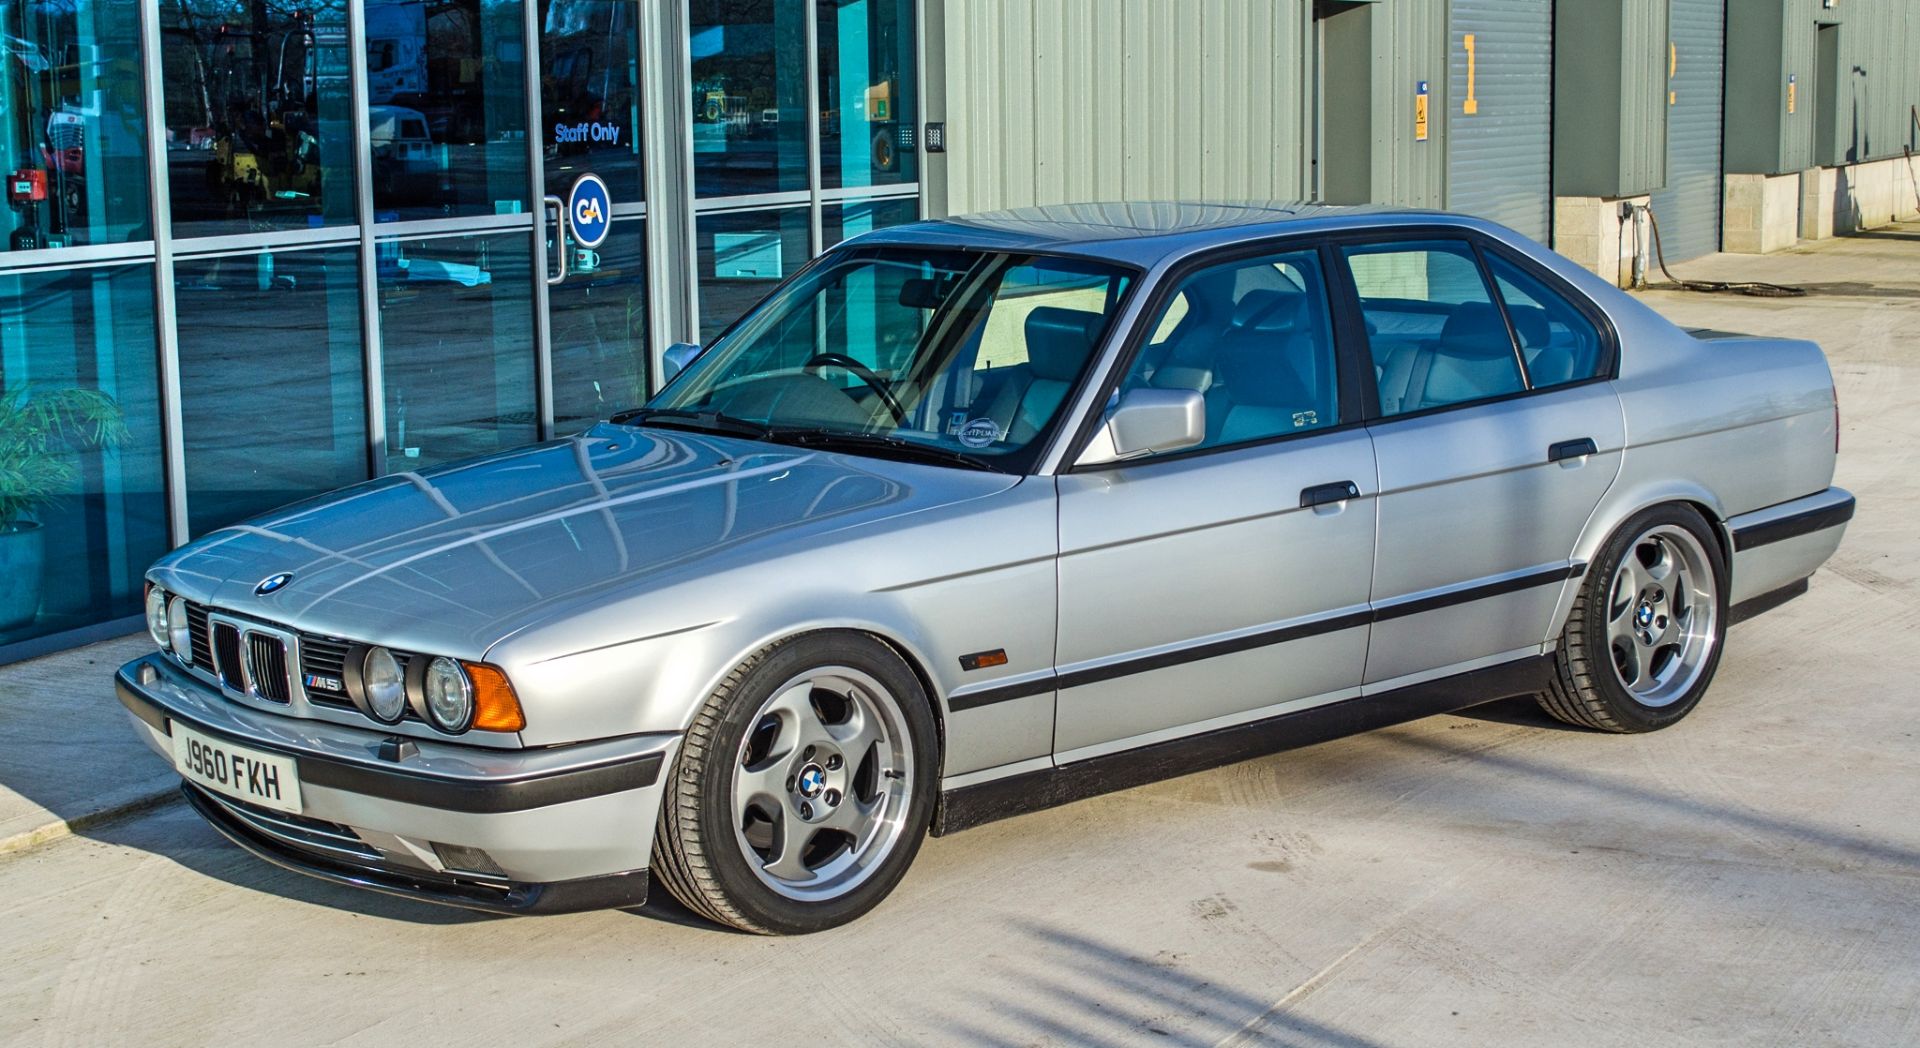 1991 BMW M5 E34 3.6 litre 4 door saloon - Image 5 of 59